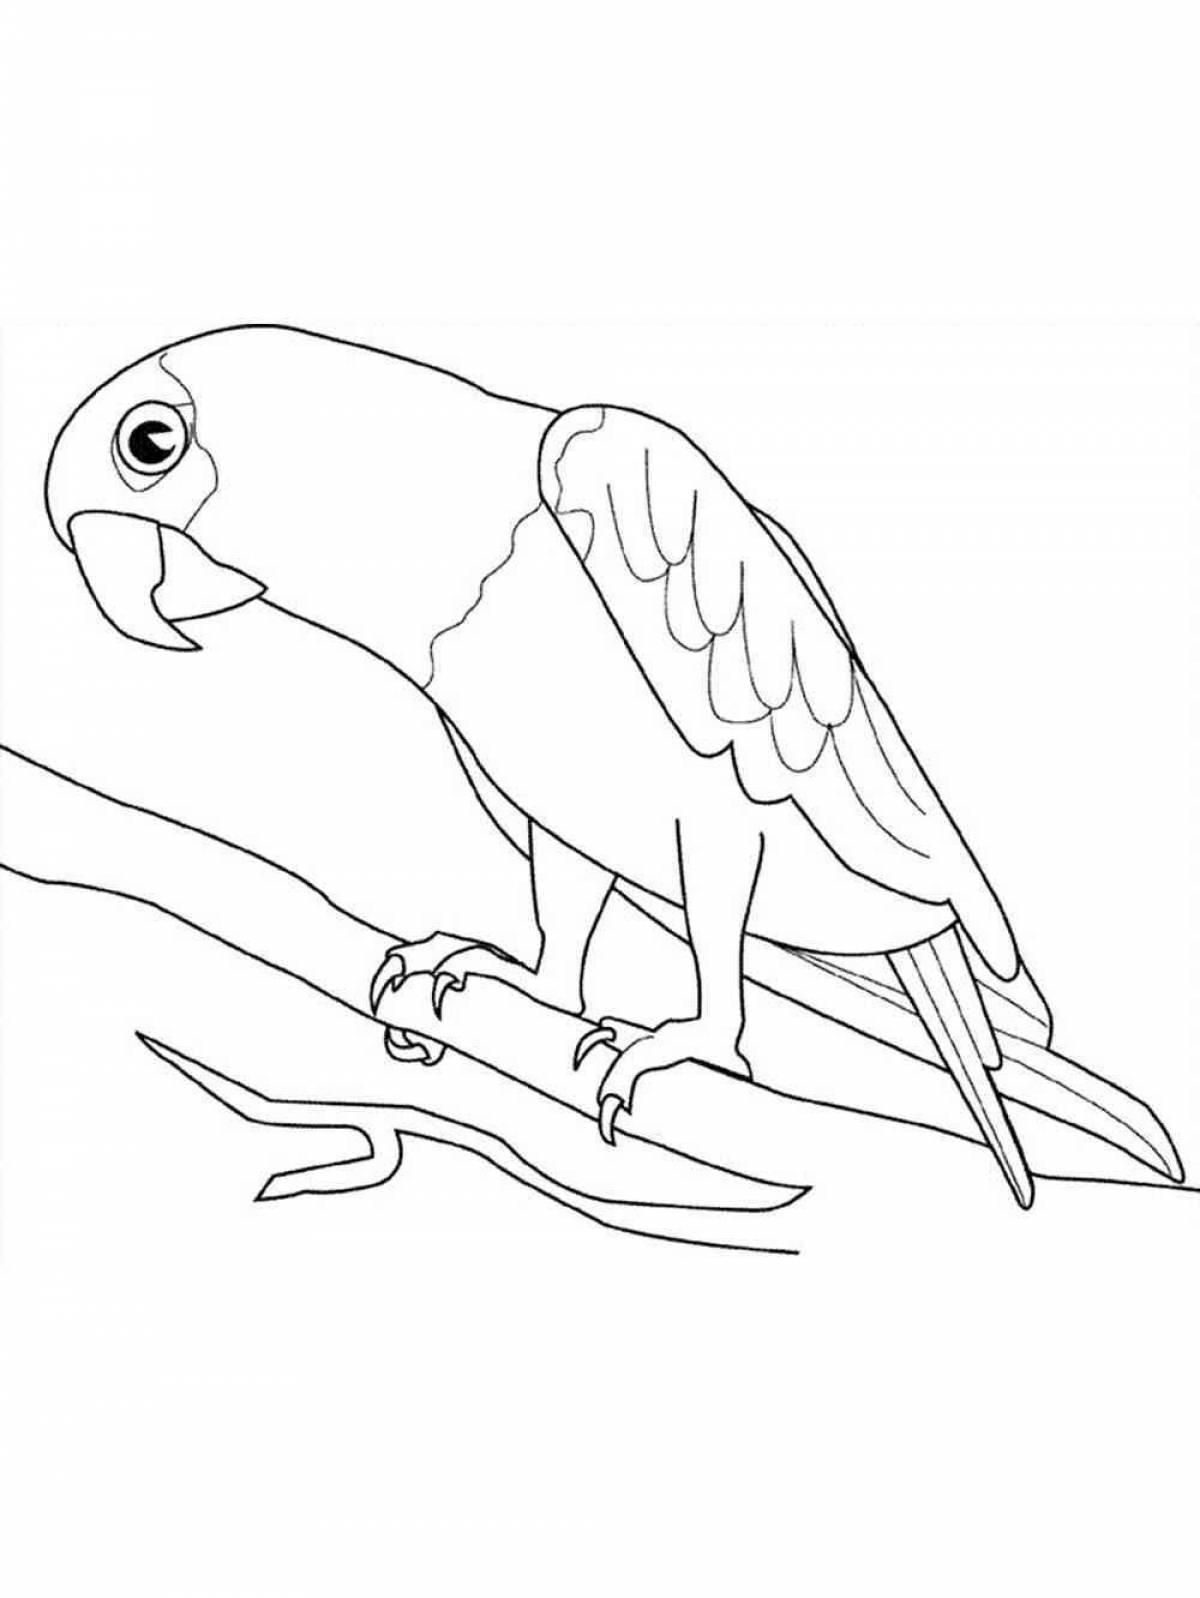 Причудливая раскраска волнистого попугайчика